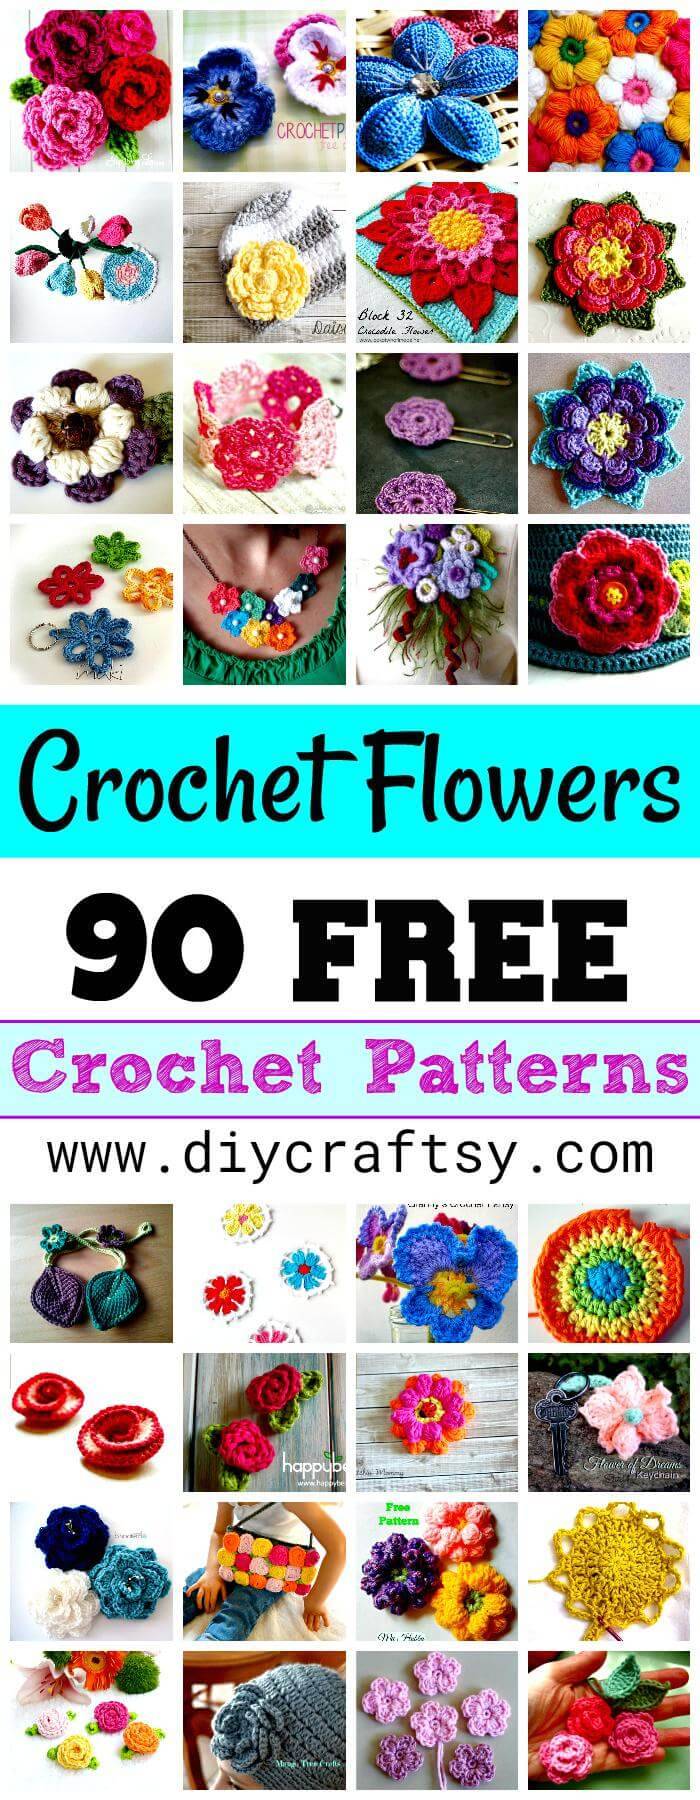 Crochet Flowers - 90+ FREE Crochet Flower Patterns - Crochet Flower Pattern, DIY Flowers, DIY Crafts